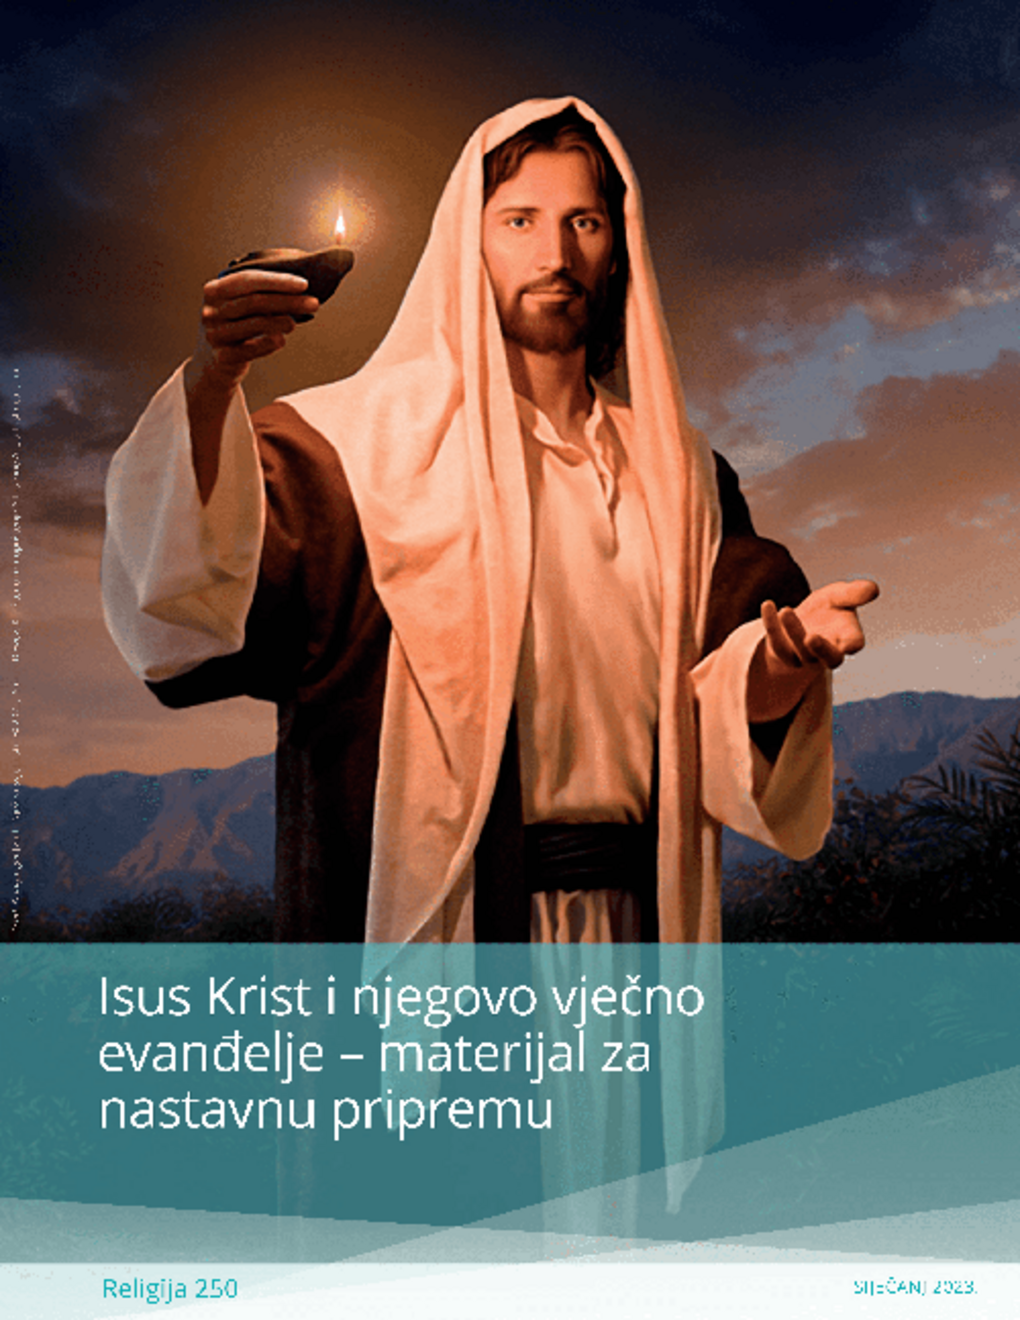 Isus Krist i njegovo vječno evanđelje – materijal za nastavnu pripremu (Rel 250)